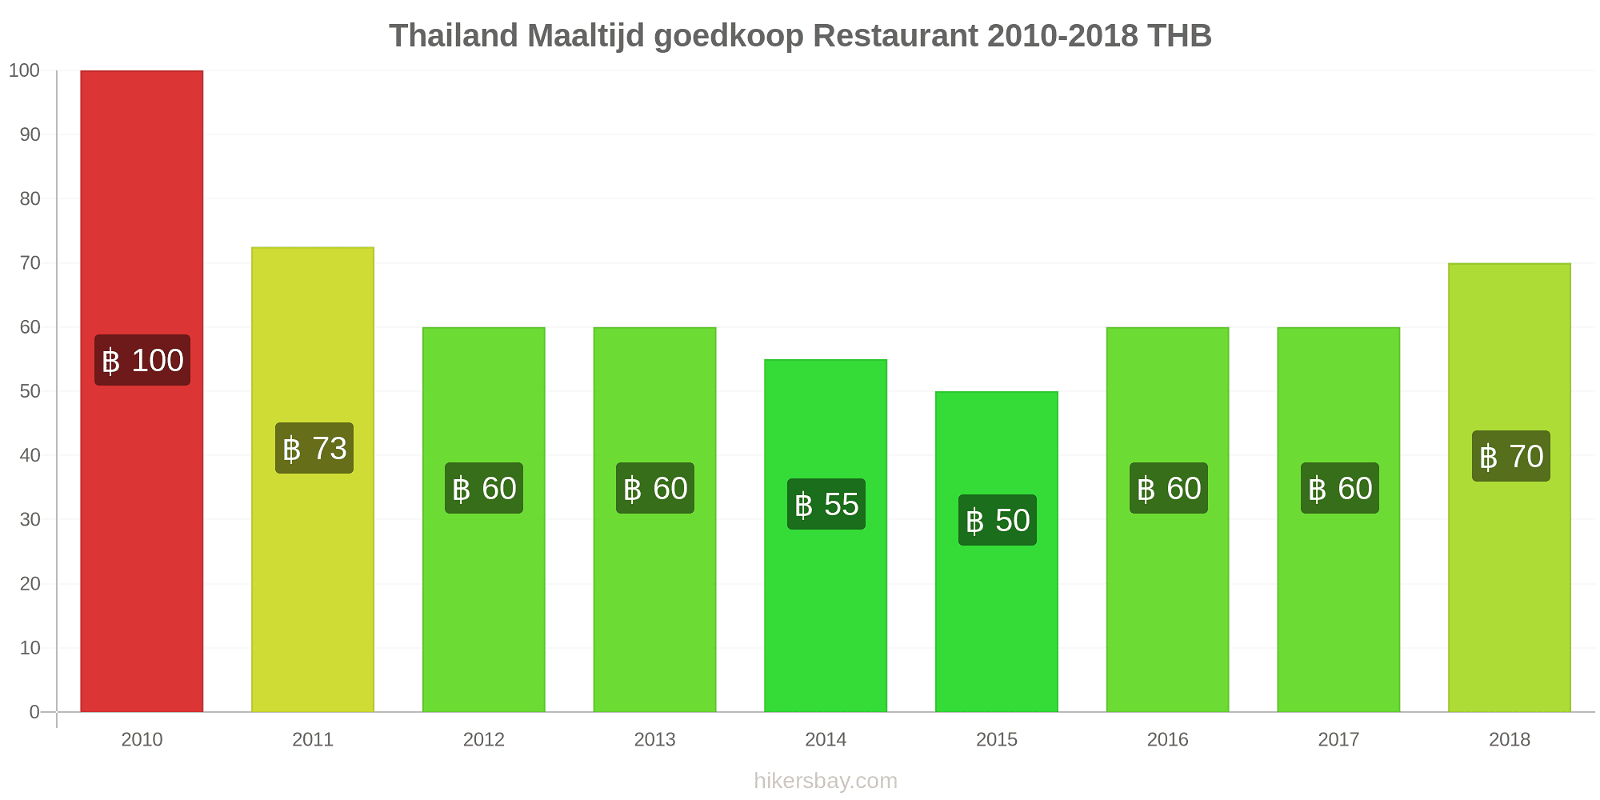 Thailand prijswijzigingen Maaltijd in een goedkoop restaurant hikersbay.com